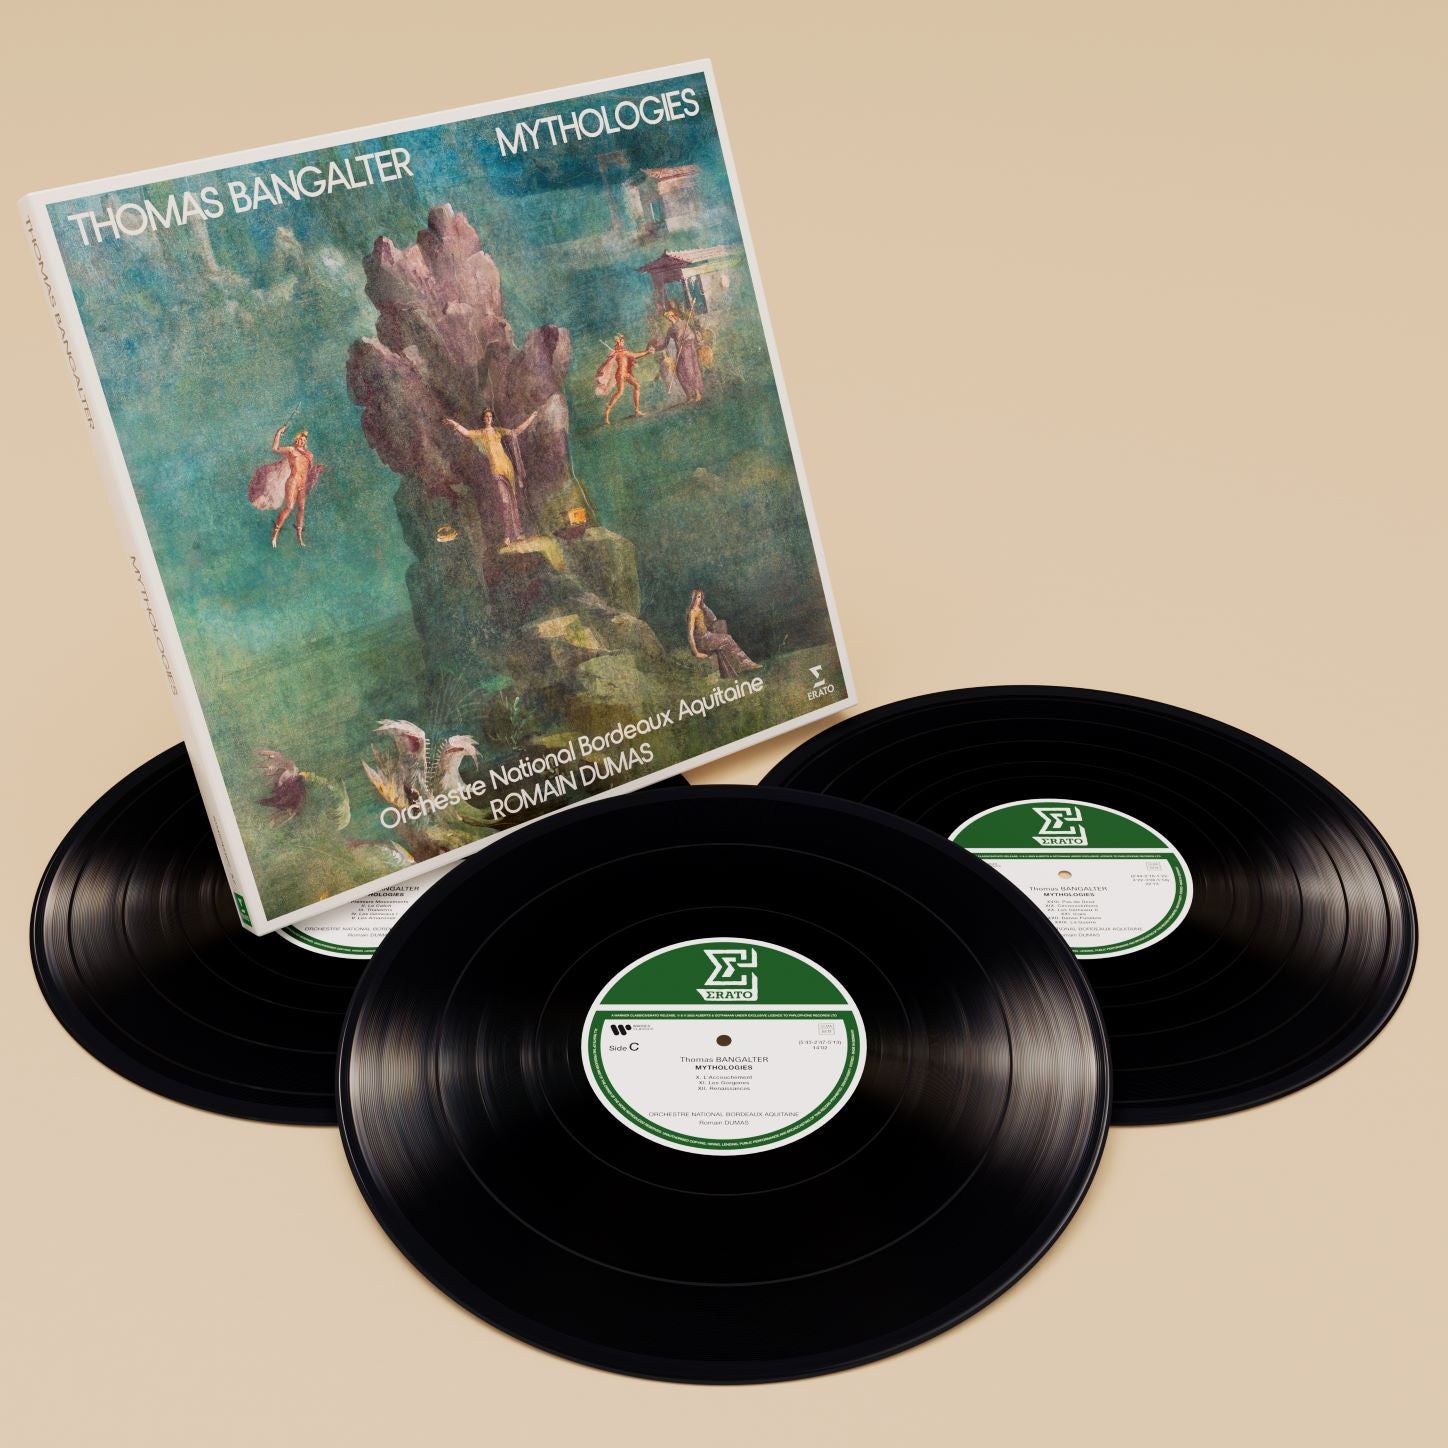 Thomas Bangalter - Mythologies: Limited Edition 3LP Boxset.